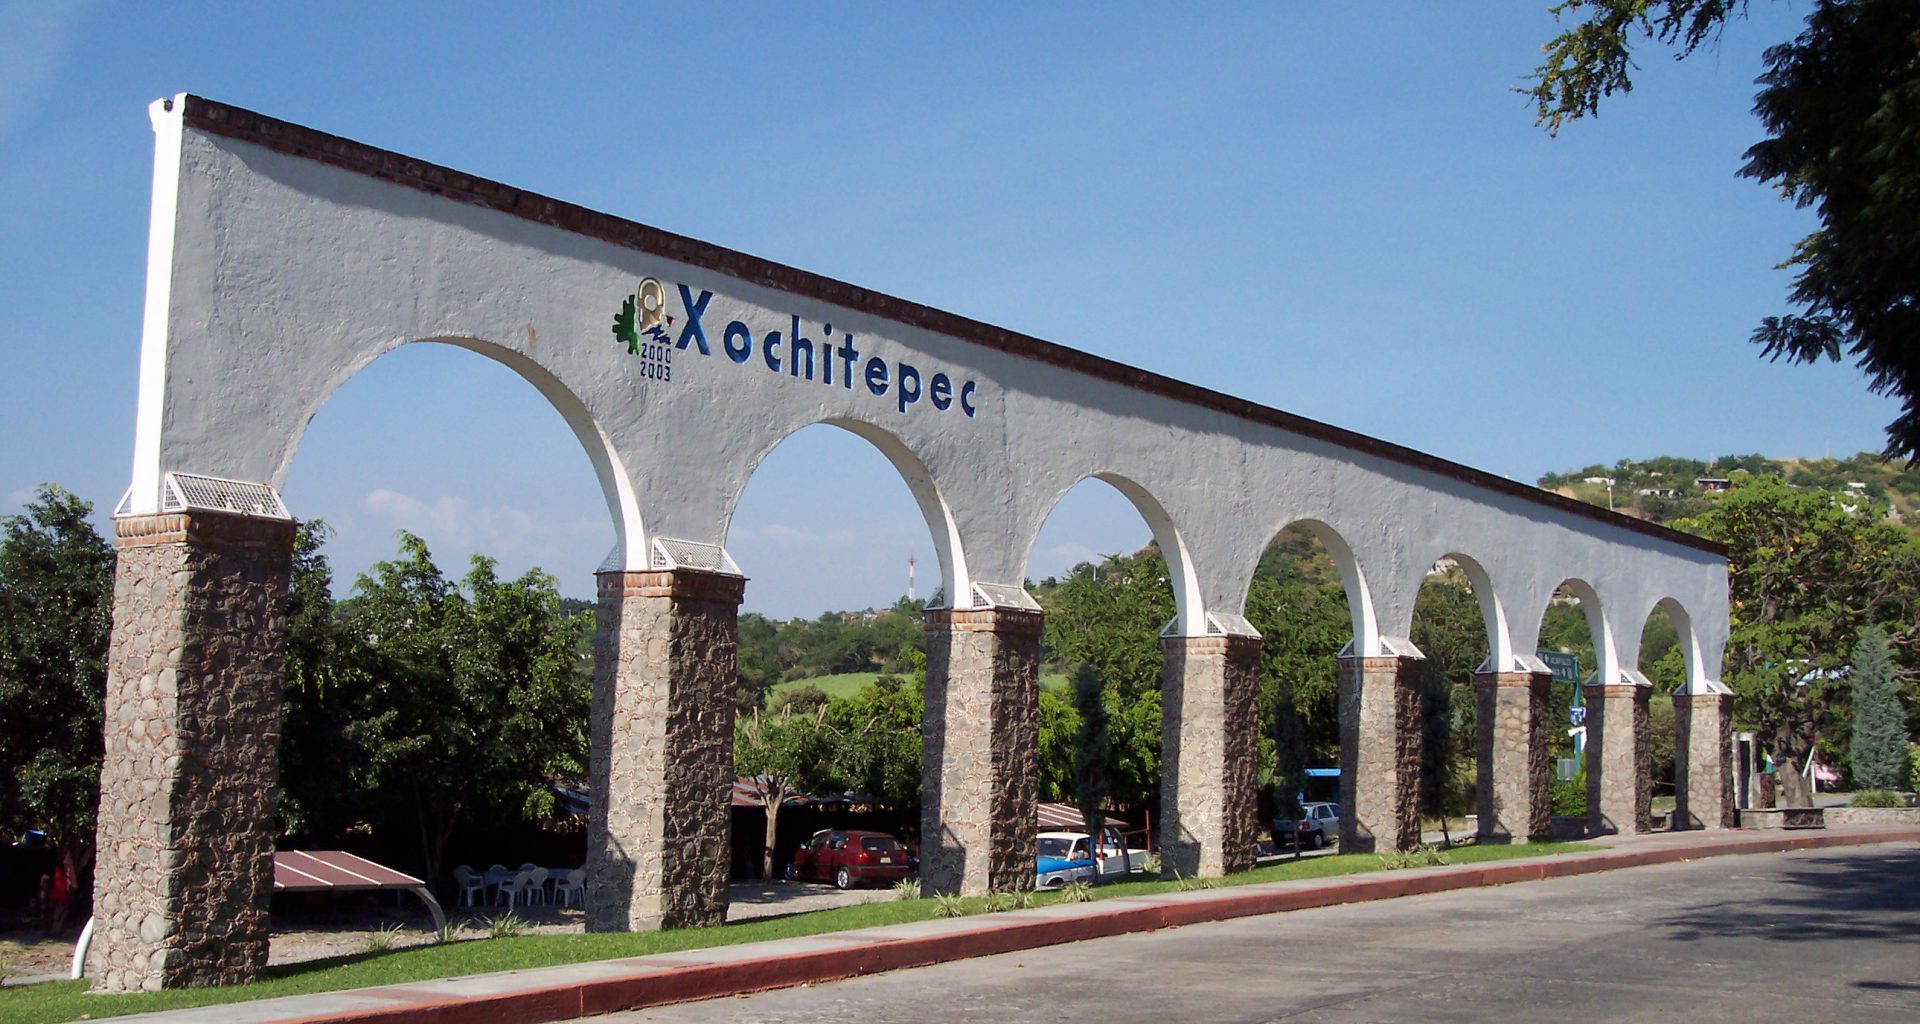 Xochitepec Morelos